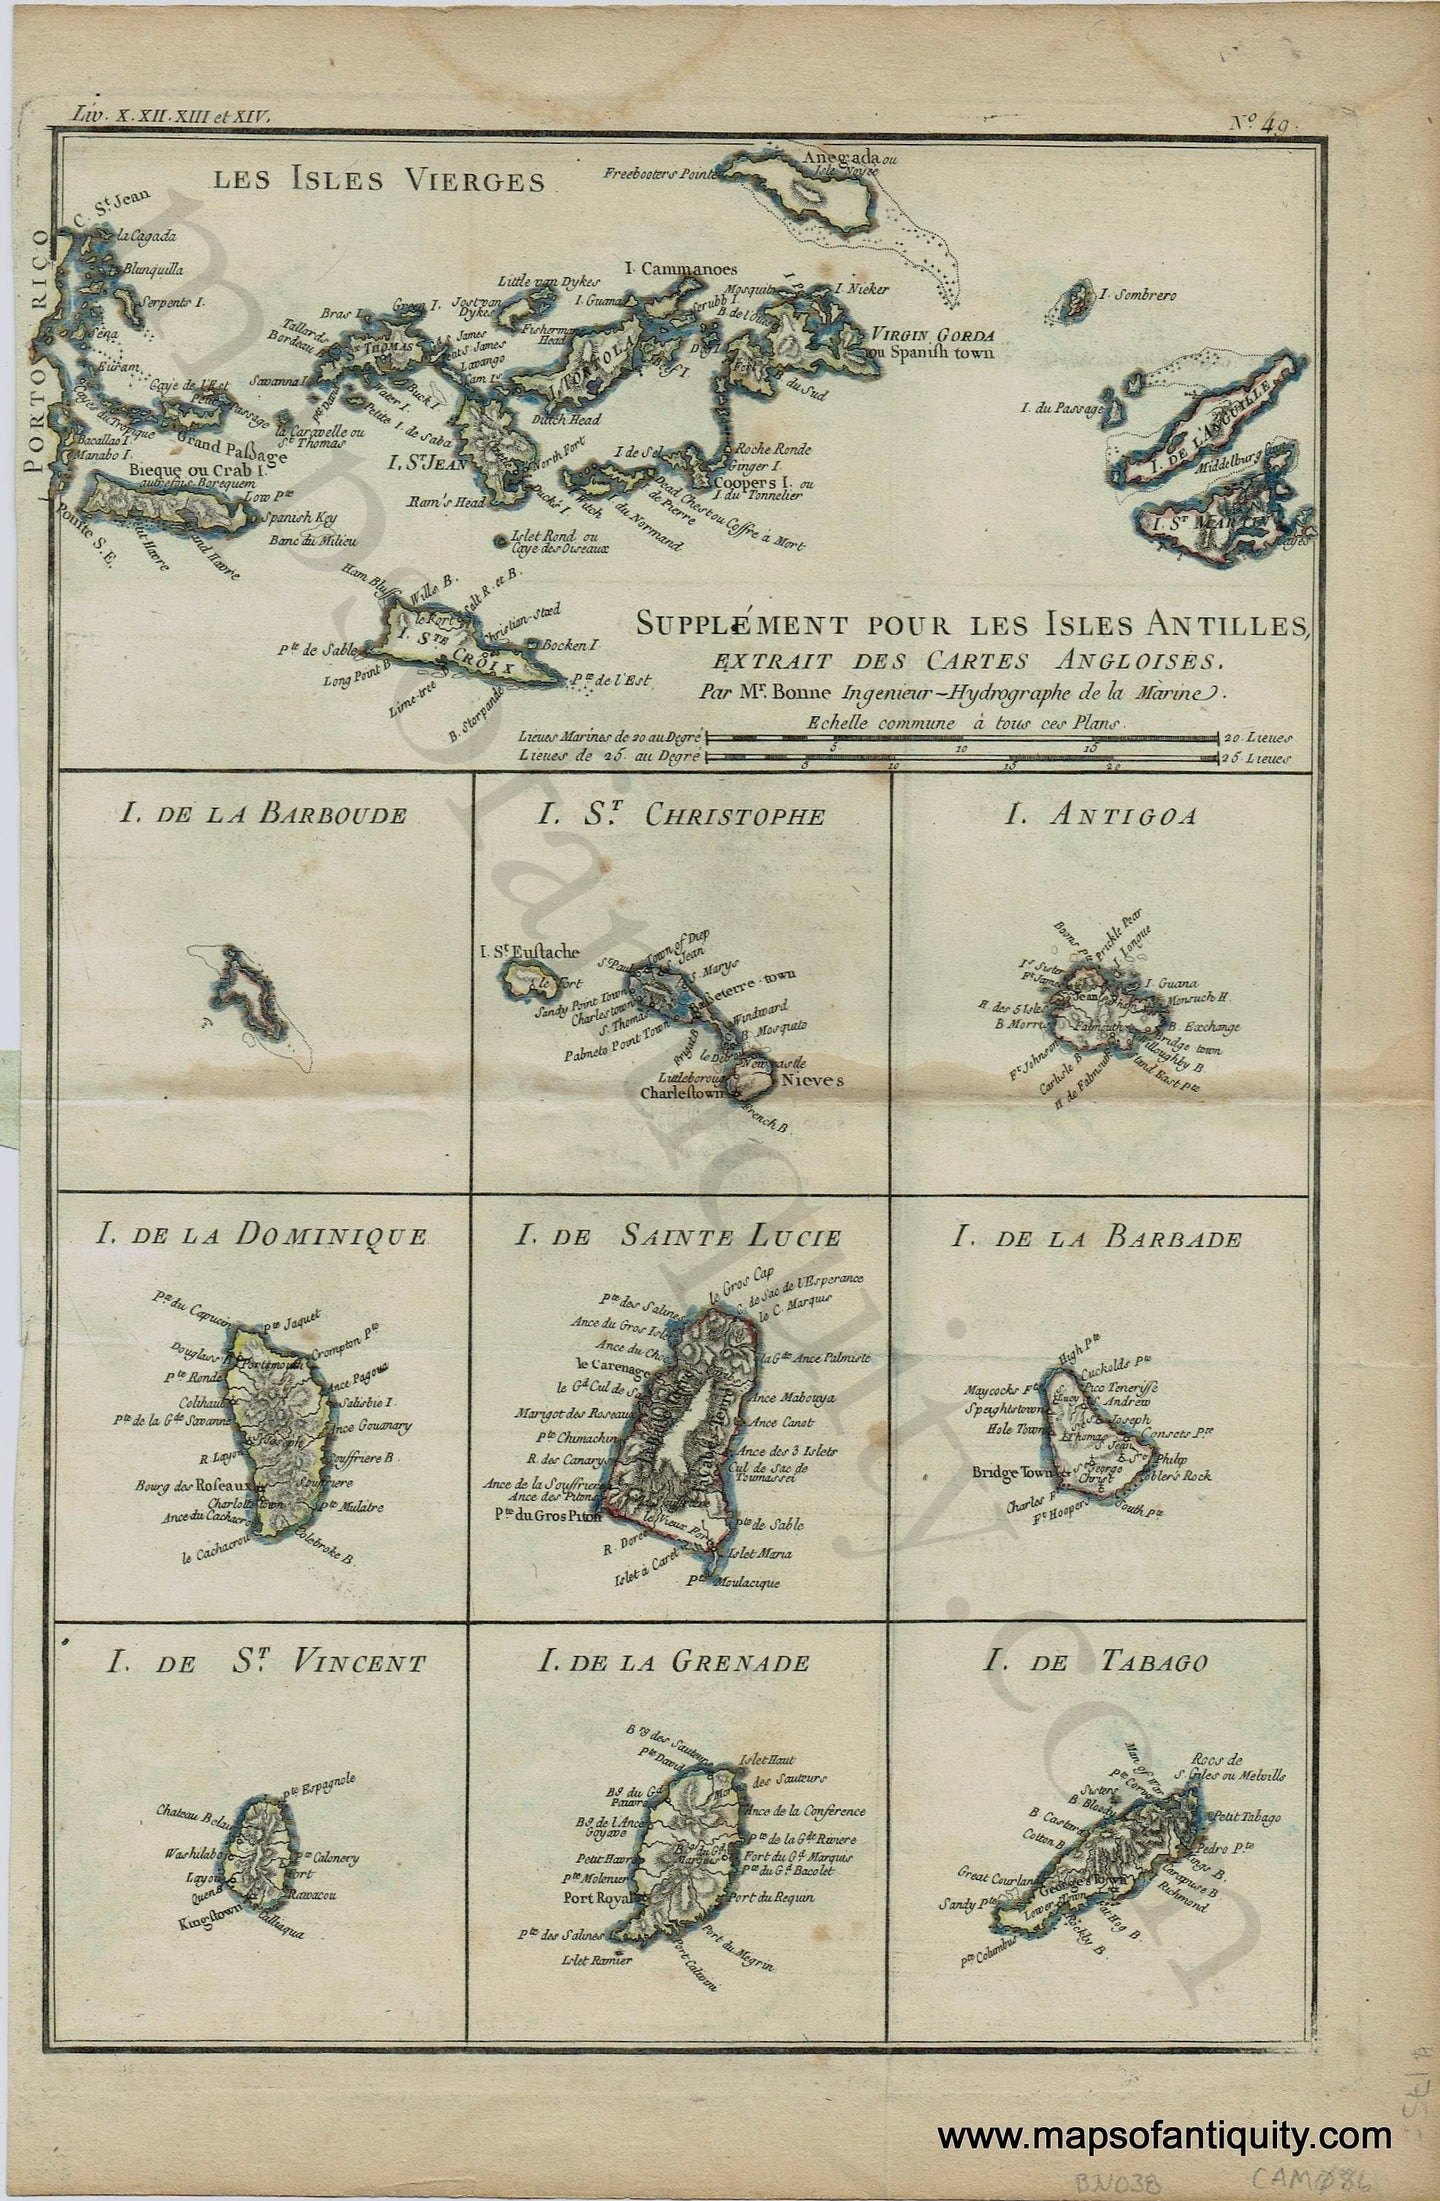 Antique-Map-Les-Isles-Vierges-Supplement-pour-les-Isles-Antilles-Extrait-des-Cartes-Angloises